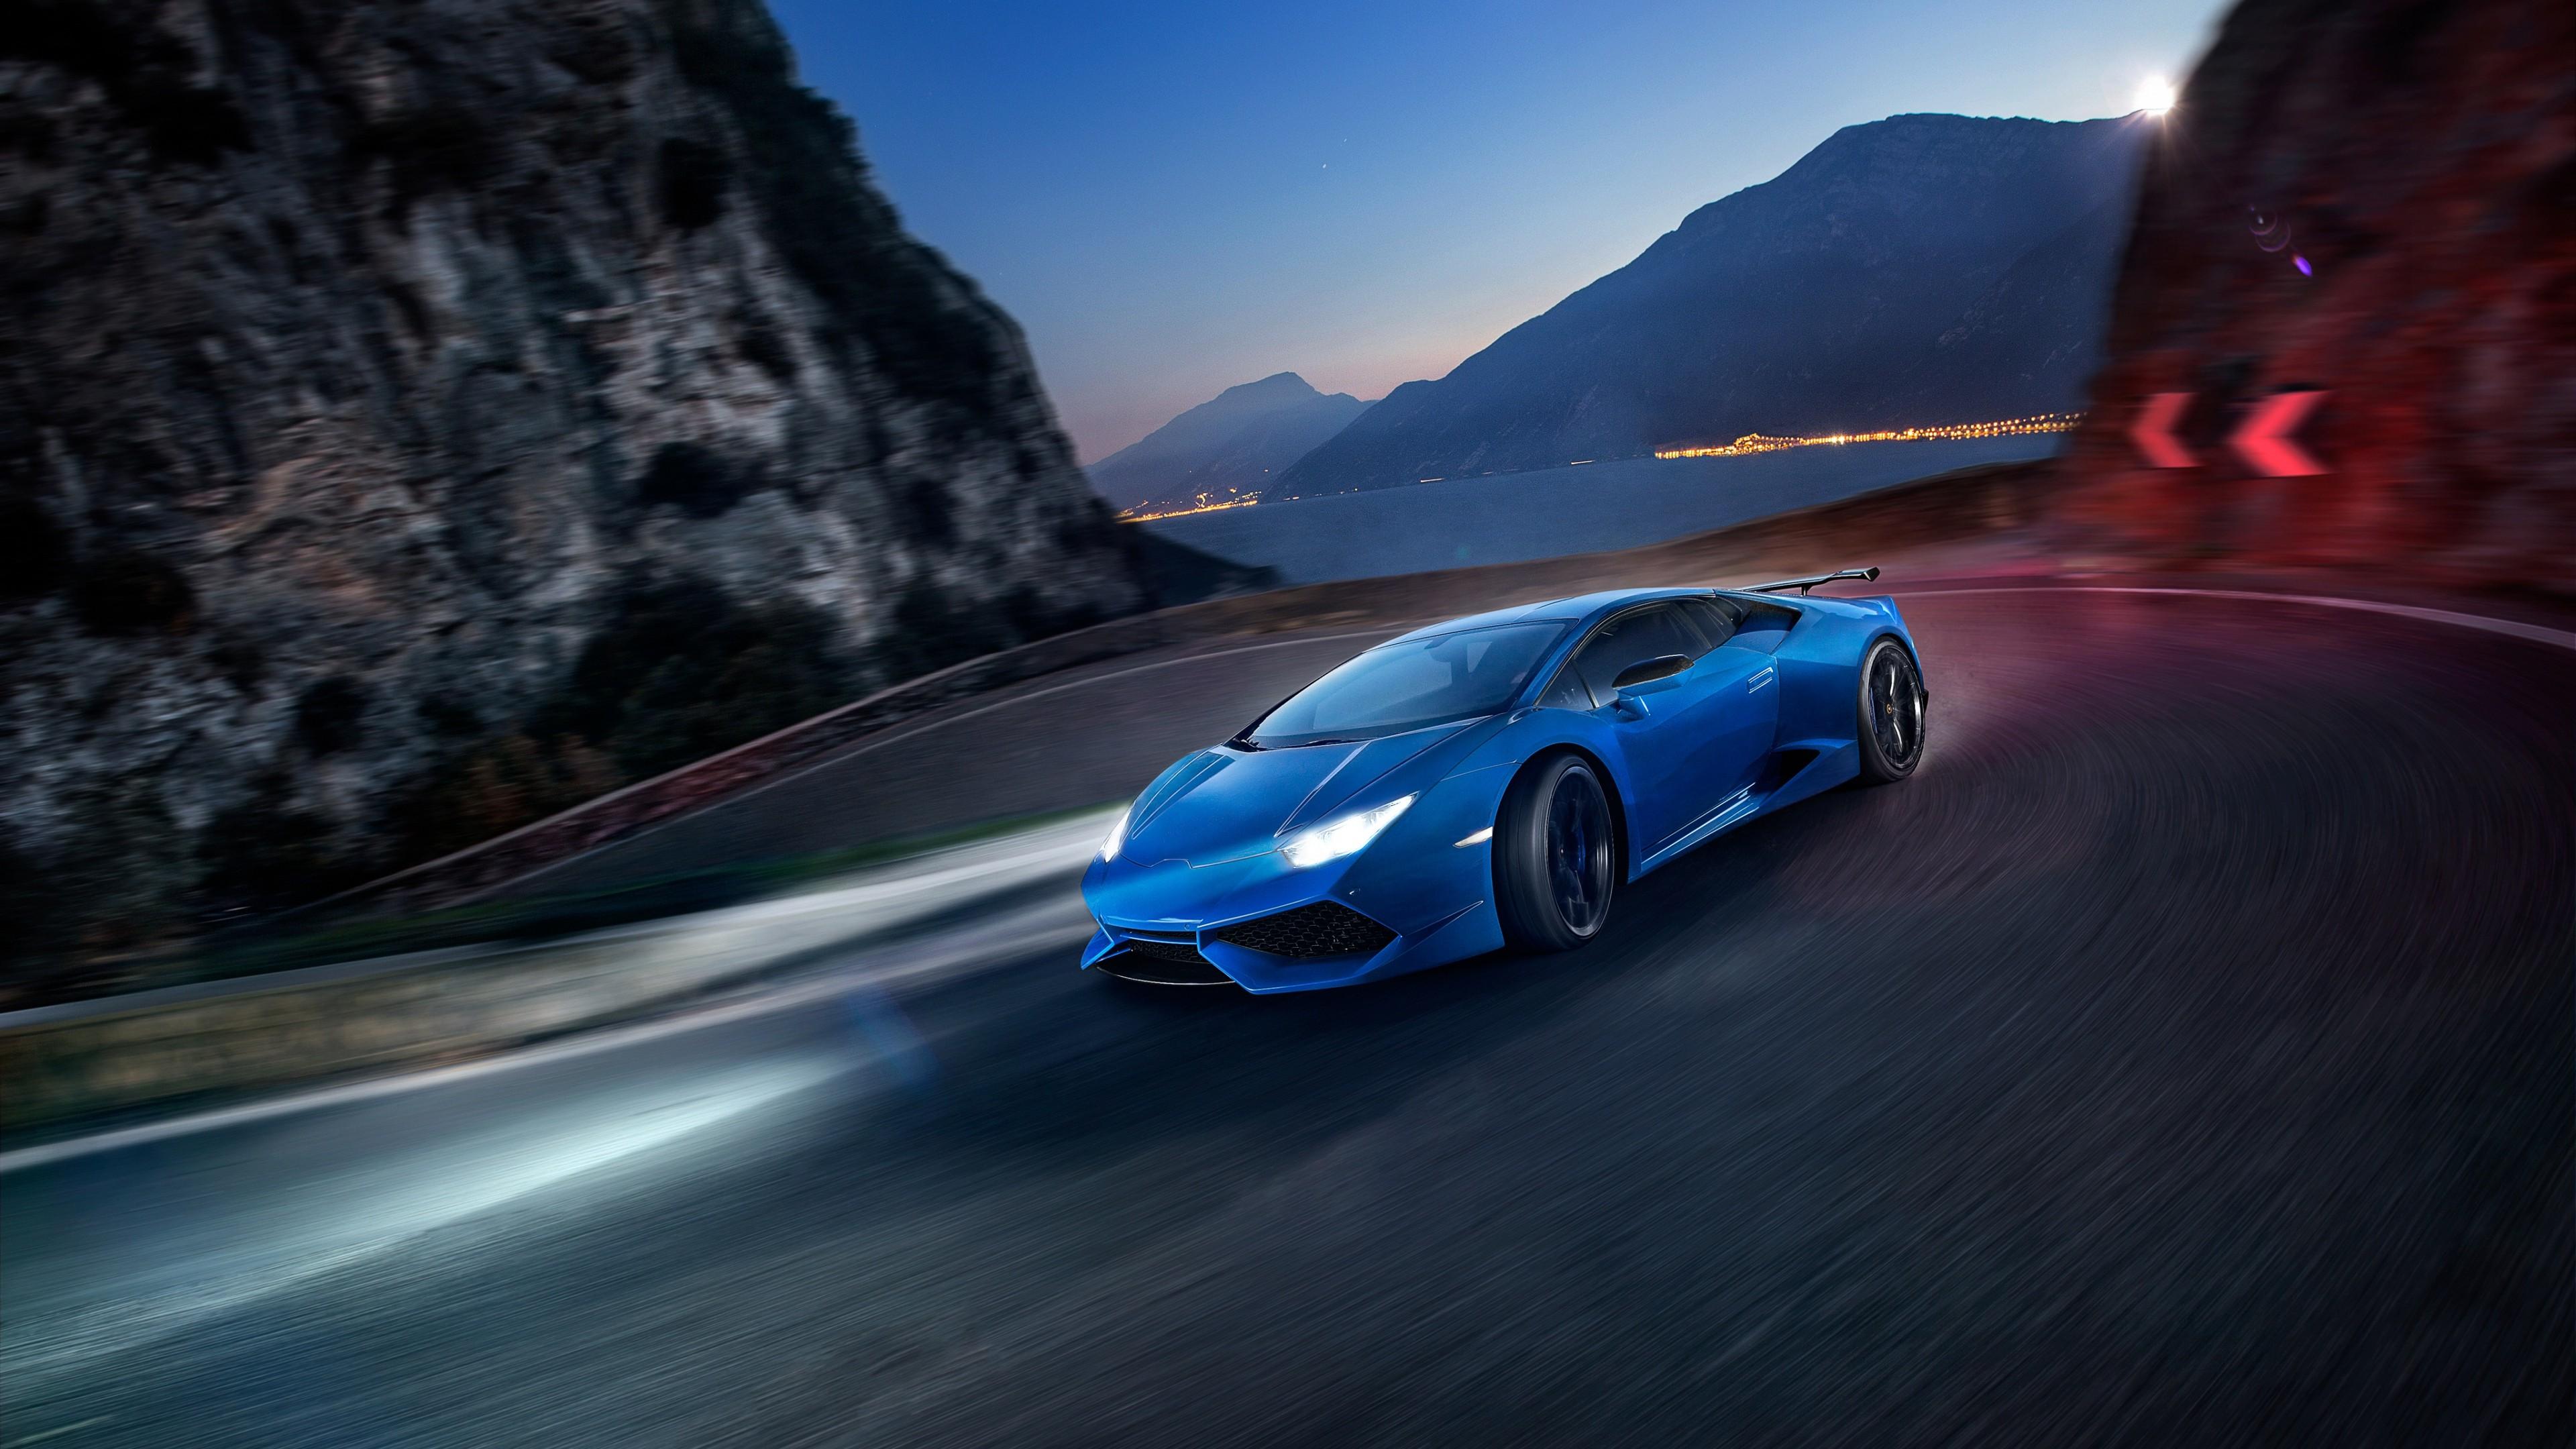 3840 x 2160 · jpeg - sports car, Vehicle, Lamborghini, Italian Supercars Wallpapers HD ...